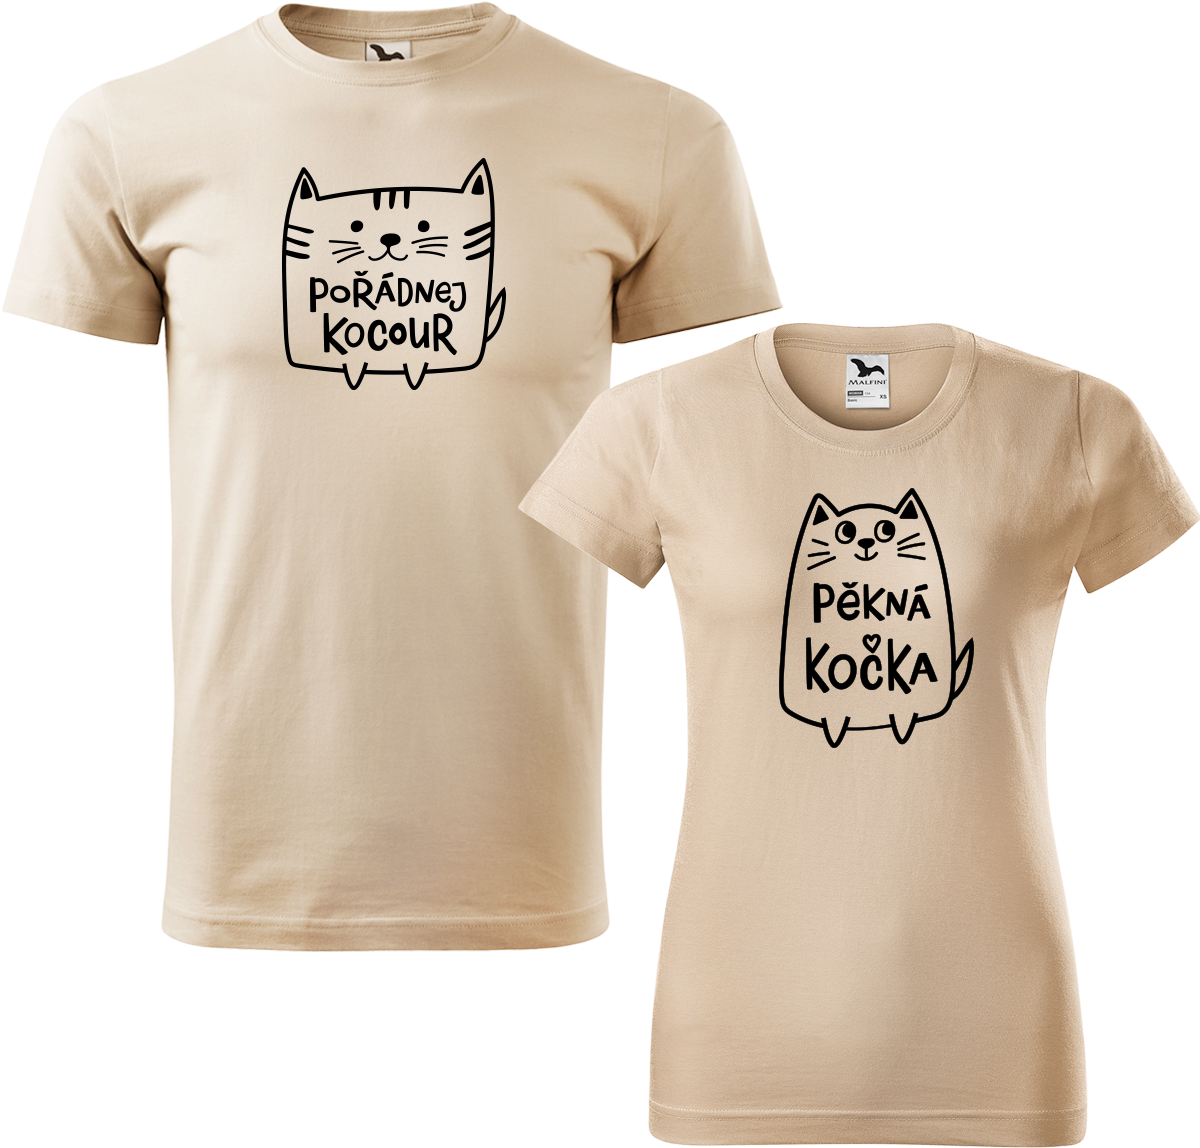 Trička pro páry - Pořádnej kocour a pěkná kočka Barva: Písková (08), Velikost dámské tričko: M, Velikost pánské tričko: L